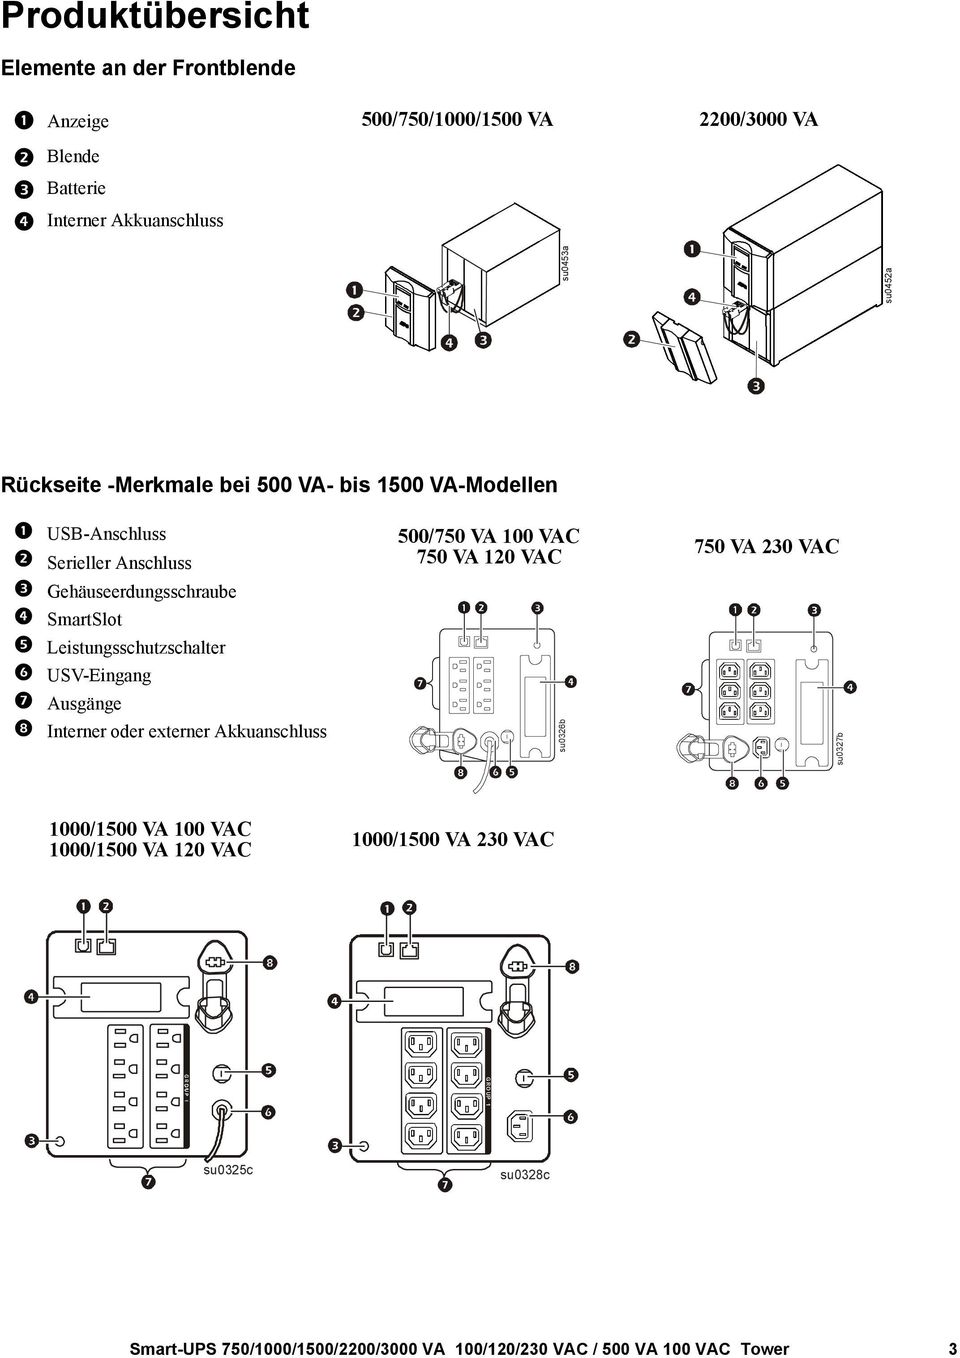 VA 120 VAC Gehäuseerdungsschraube SmartSlot Leistungsschutzschalter USV-Eingang Ausgänge Interner oder externer Akkuanschluss